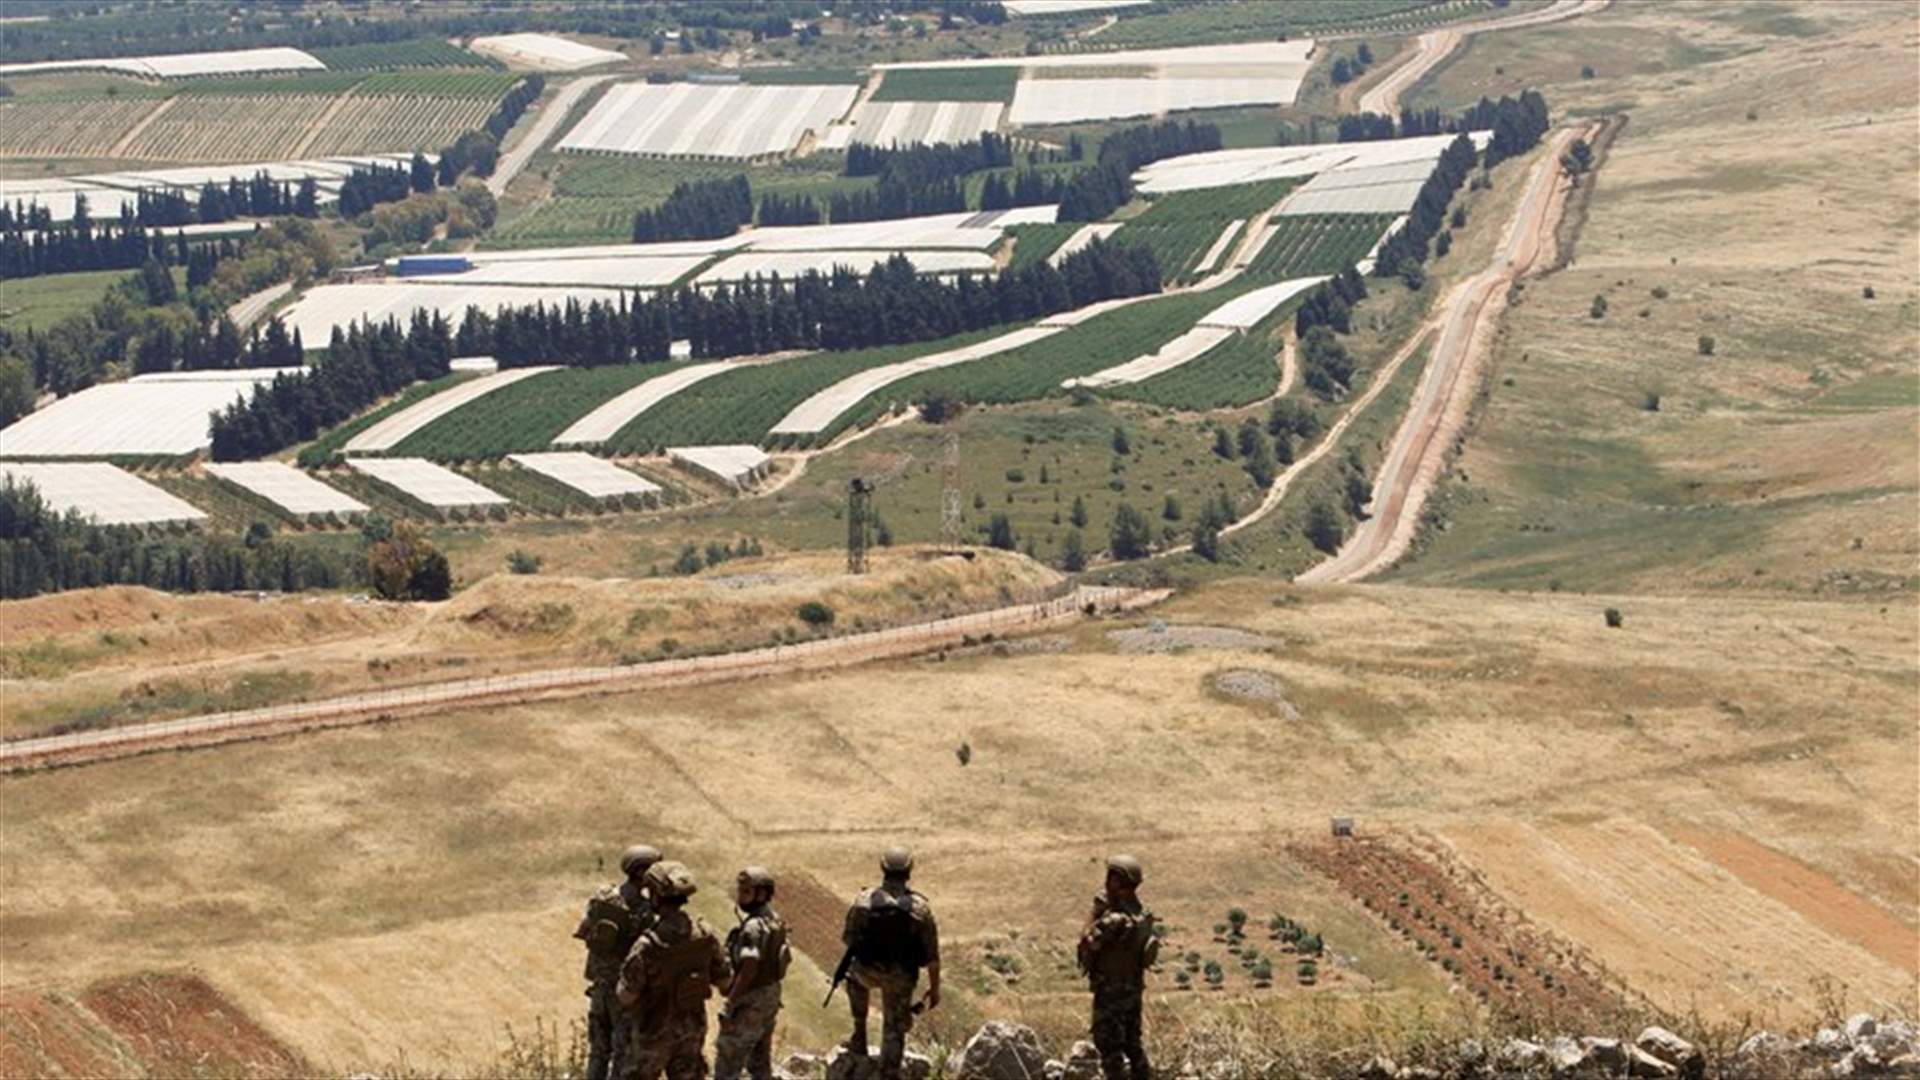 الجيش الإسرائيلي يطلق النار في الهواء باتجاه مزارعين بالقرب من السياج التقني